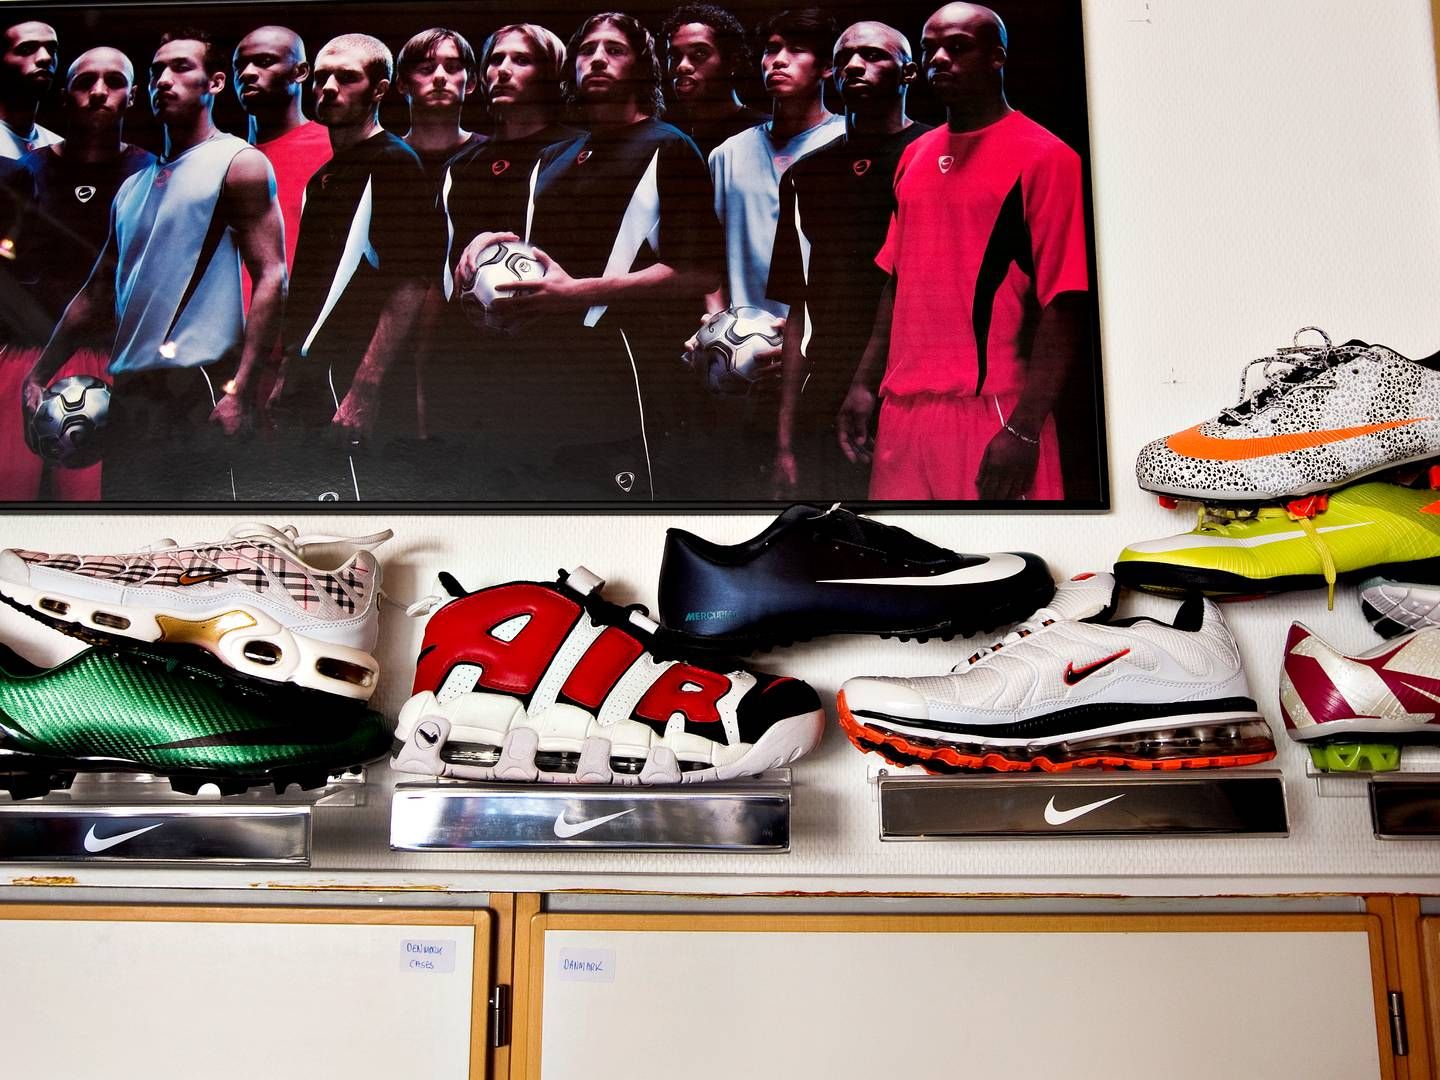 Falske billige efterligninger florerer af mange mærkevarer som fx Nike. | Foto: Jacob Ehrbahn